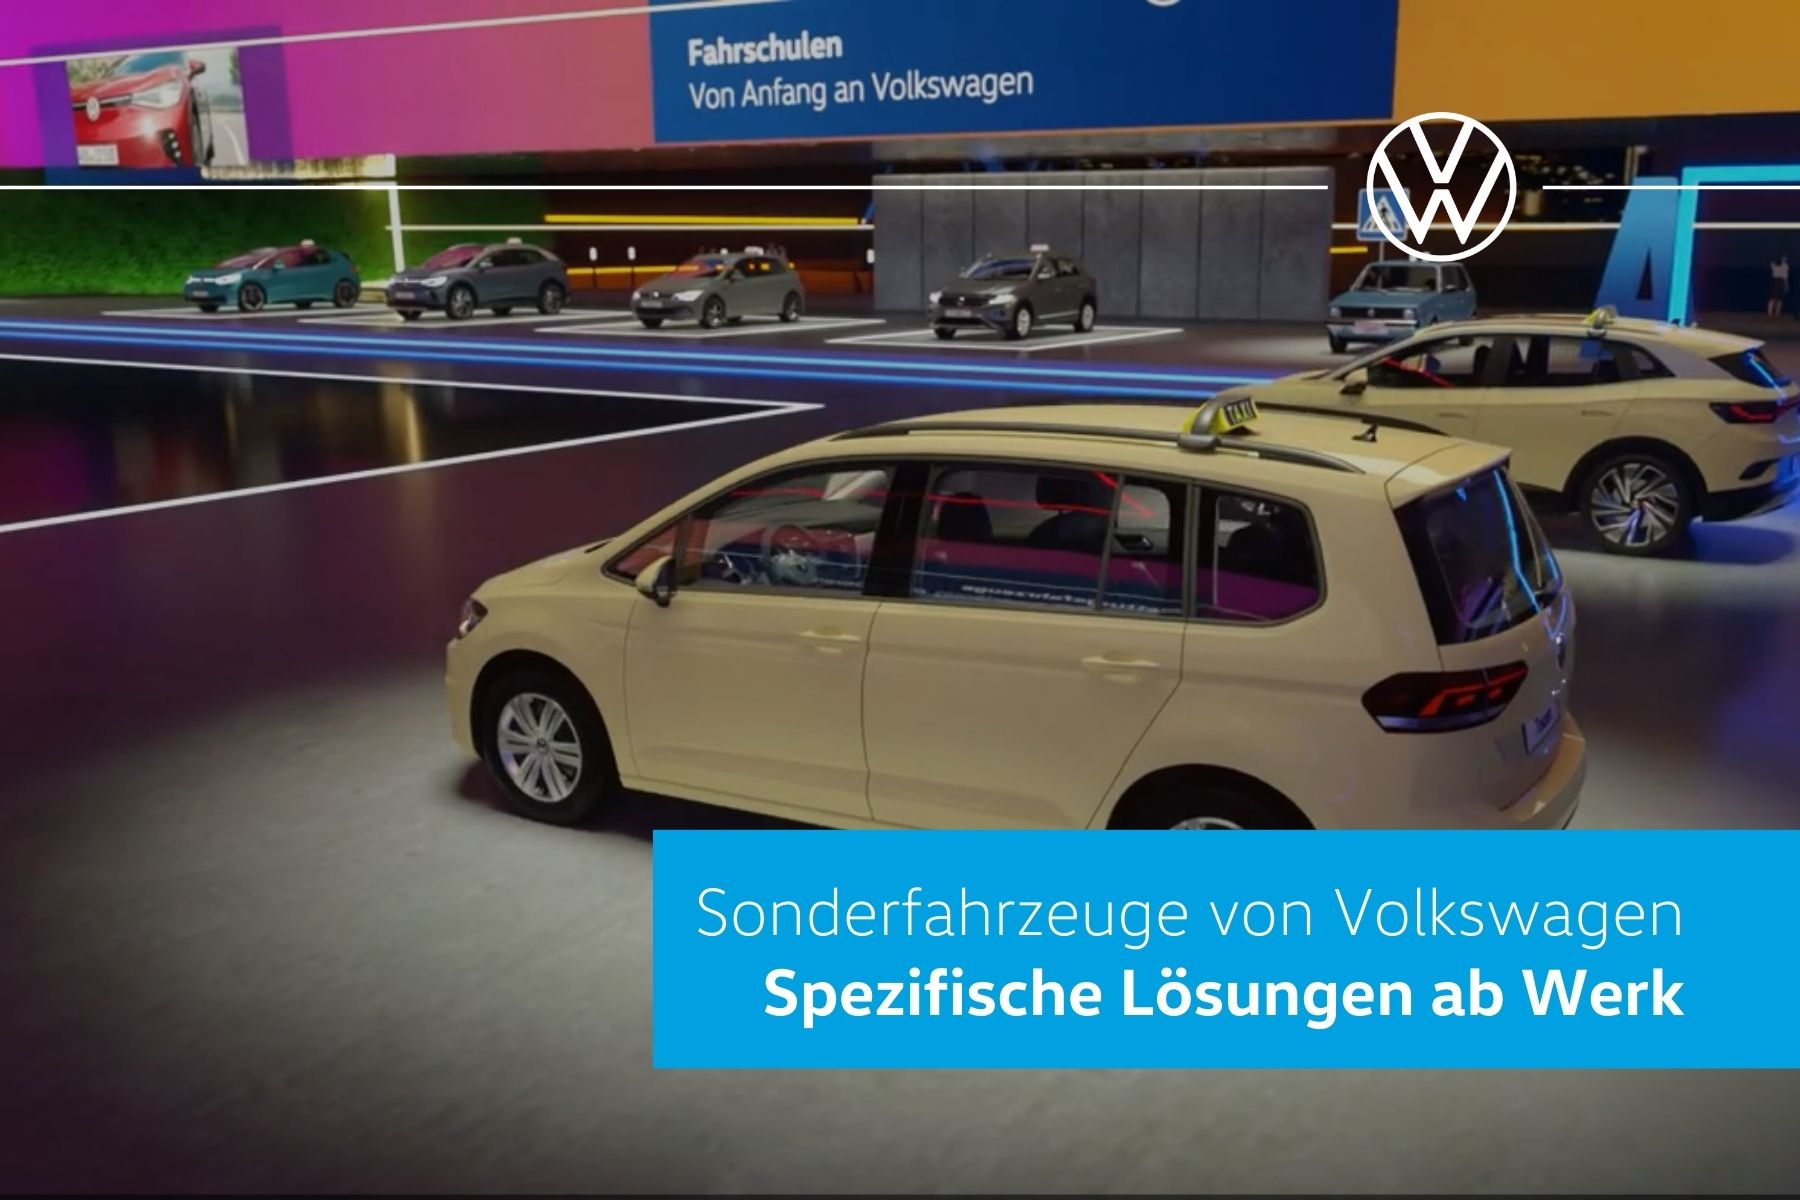 Sonderfahrzeuge von Volkswagen: Taxi, Fahrschulen, Rettungsfahrzeuge